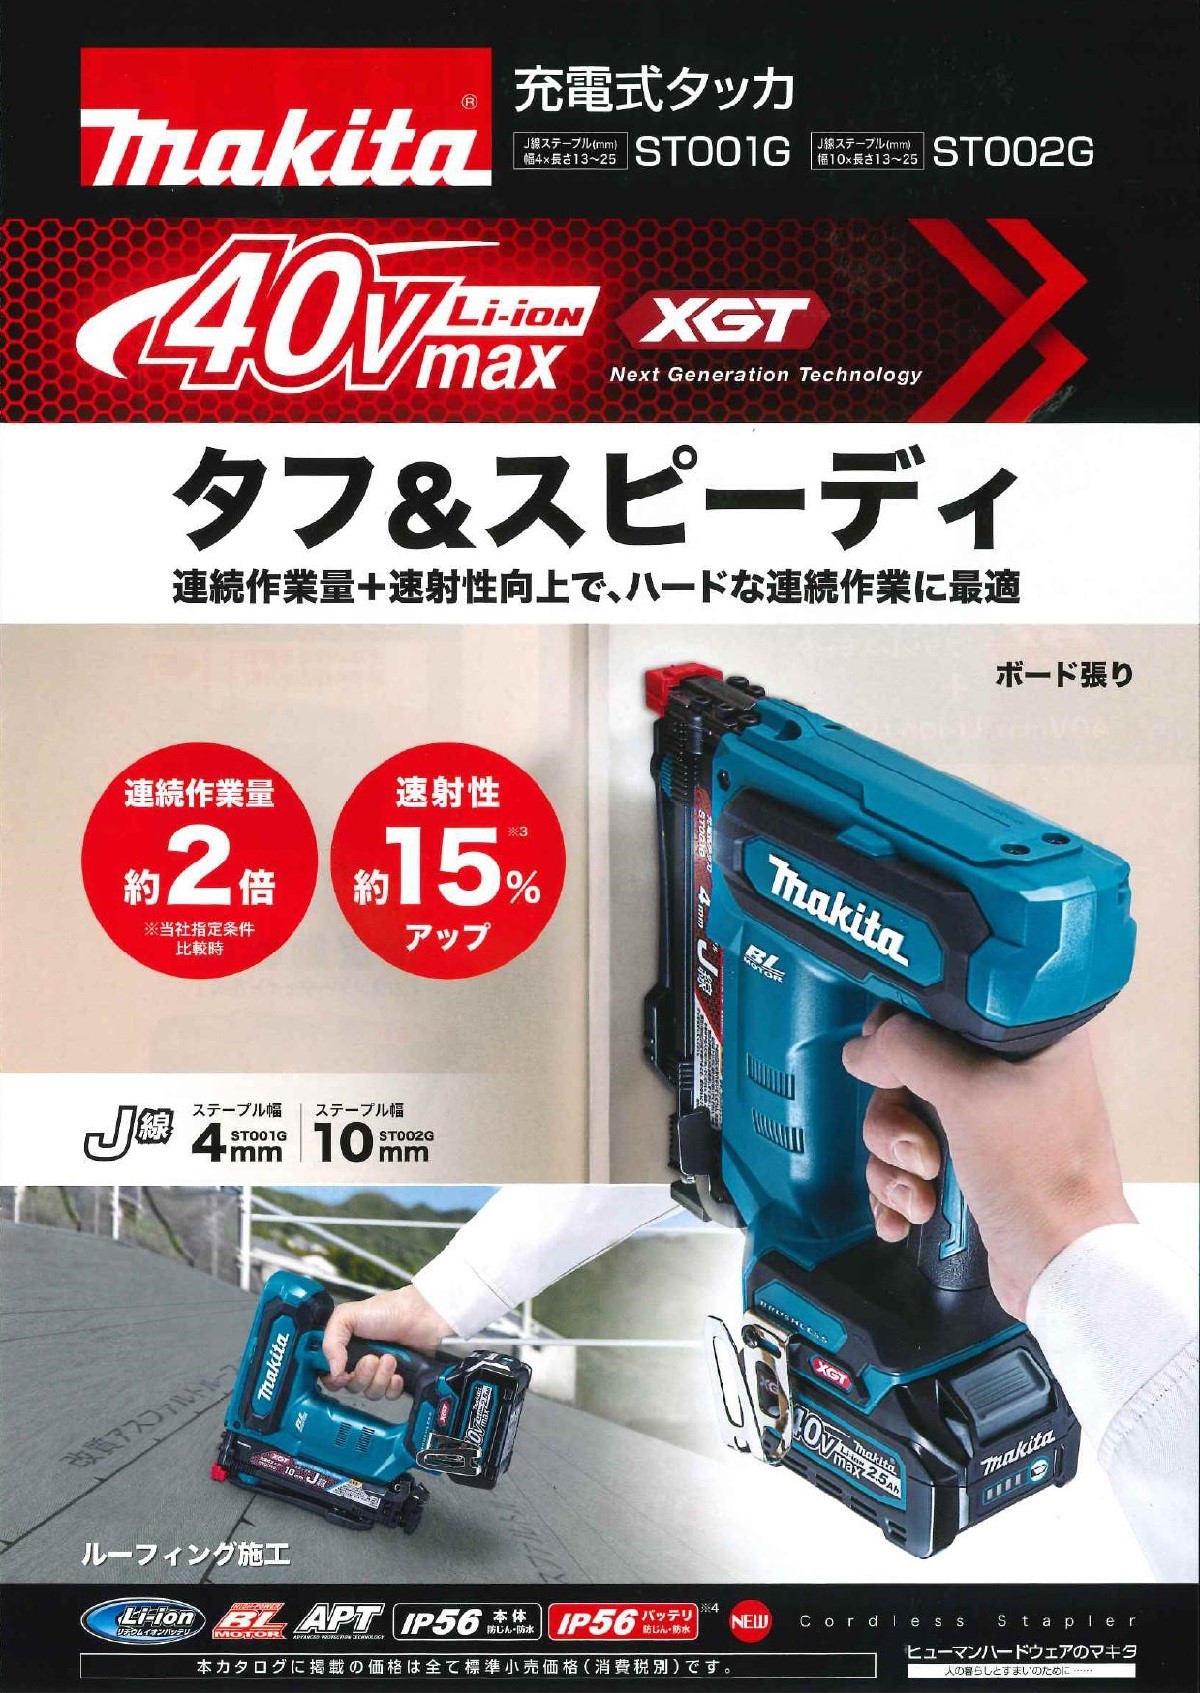 マキタ 40V 充電式タッカ ST001GRDX J線/4mm セット品 (2.5Ah 